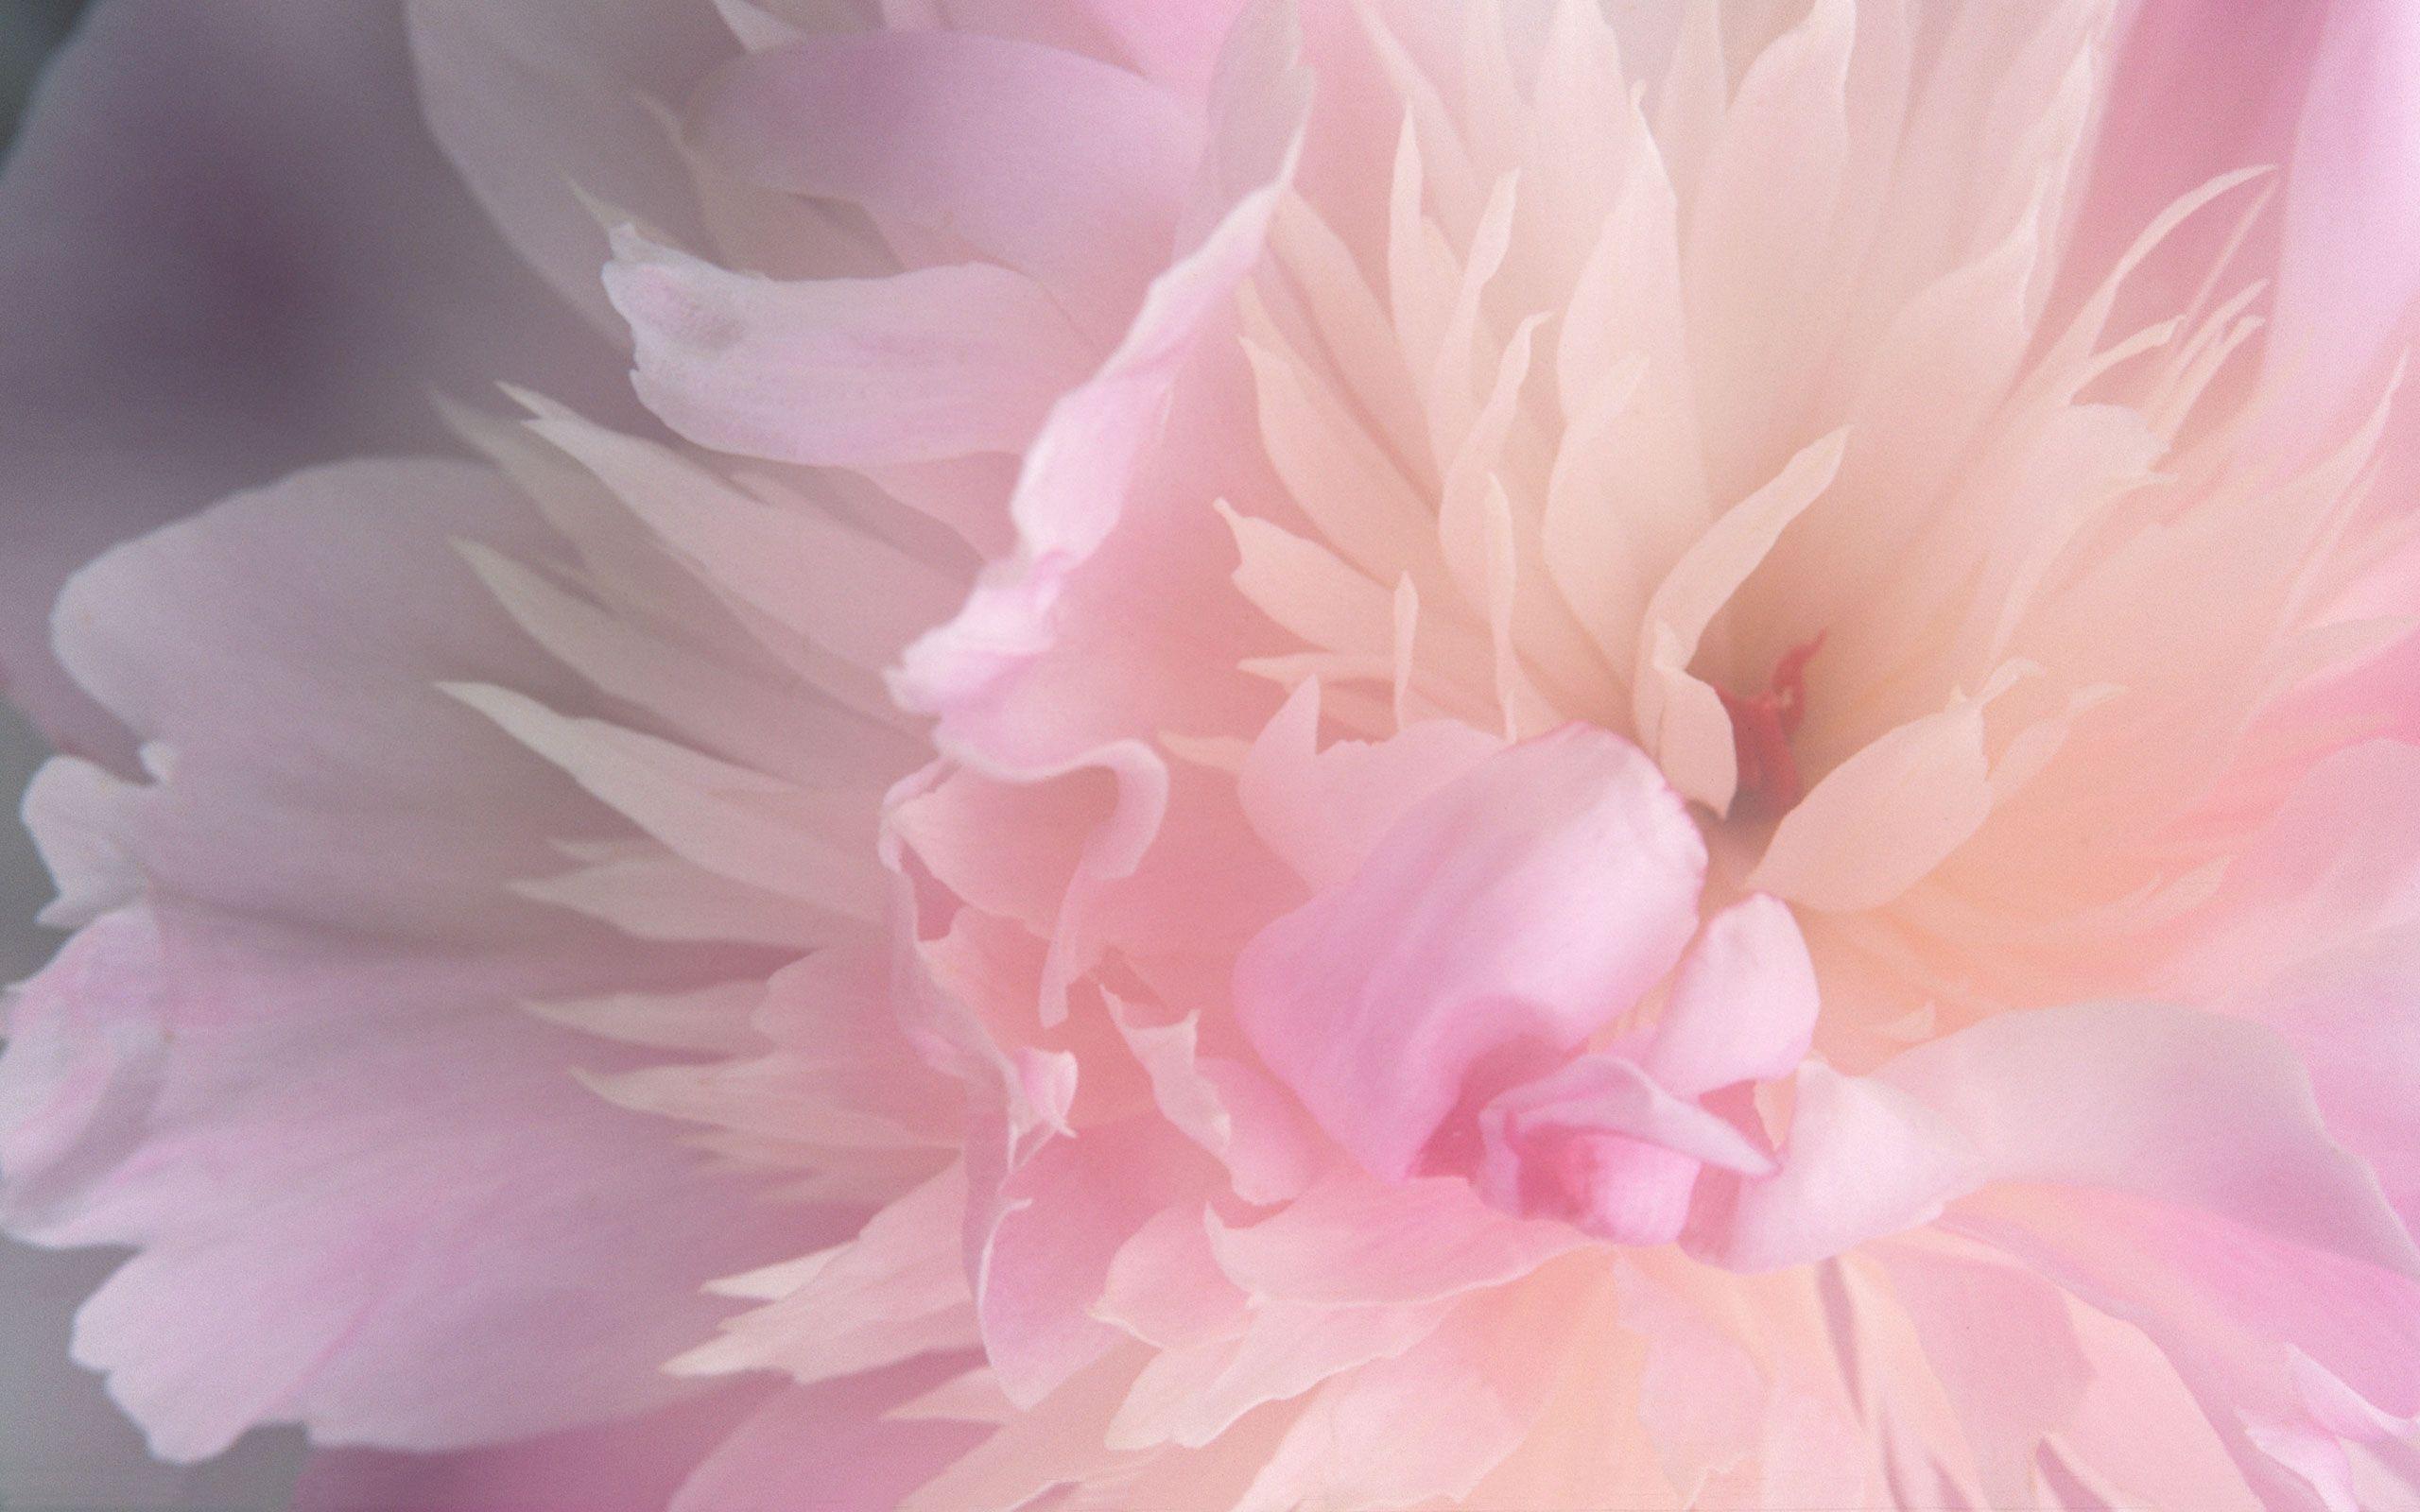 Hoa bòn bon hồng tươi tuyệt đẹp và sang trọng. Khám phá nét đẹp của hoa mẫu đơn hồng trong bức ảnh này và đắm chìm trong những cánh hoa đầy mê hoặc này.